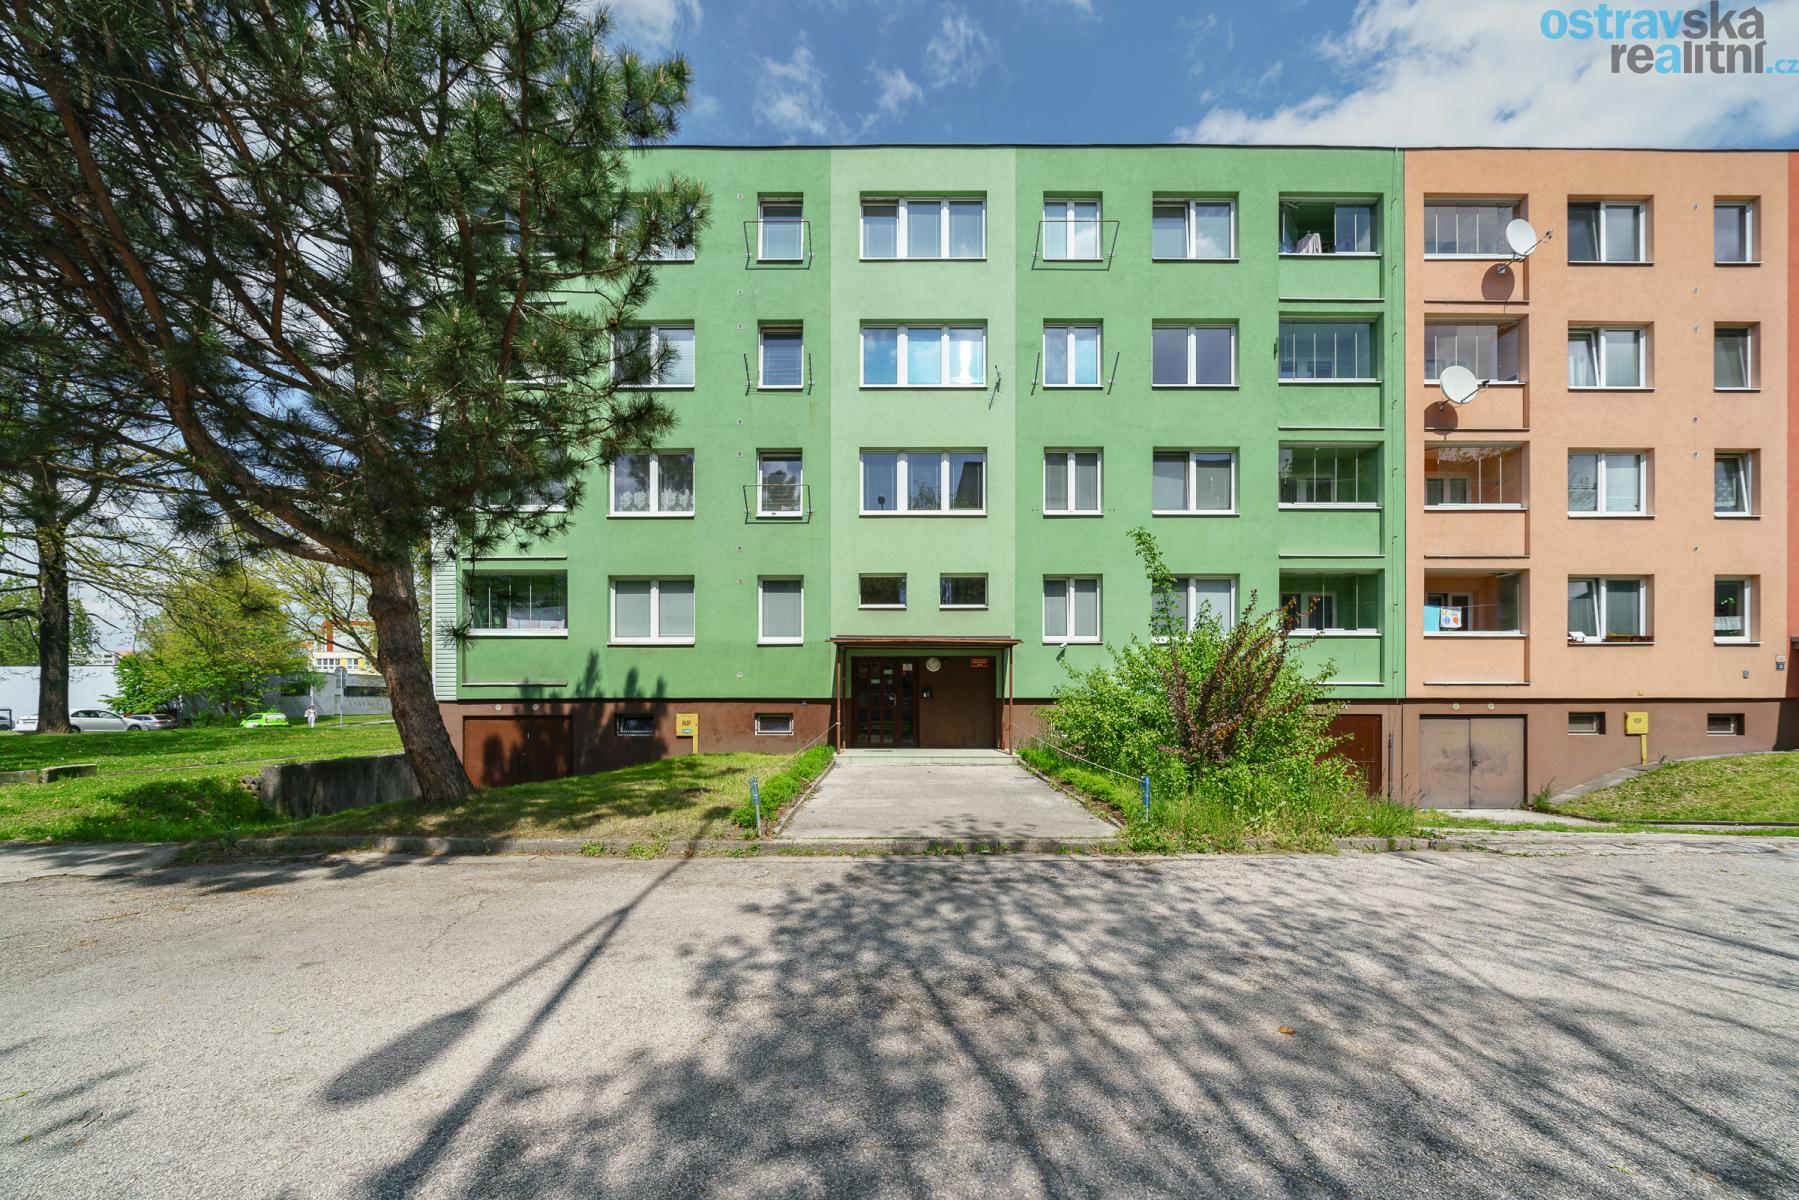 Pronájem, rekonstruovaný byt 3+1 s lodžií, Ostrava - Dubina, ul. Václava Košaře, 72 m2